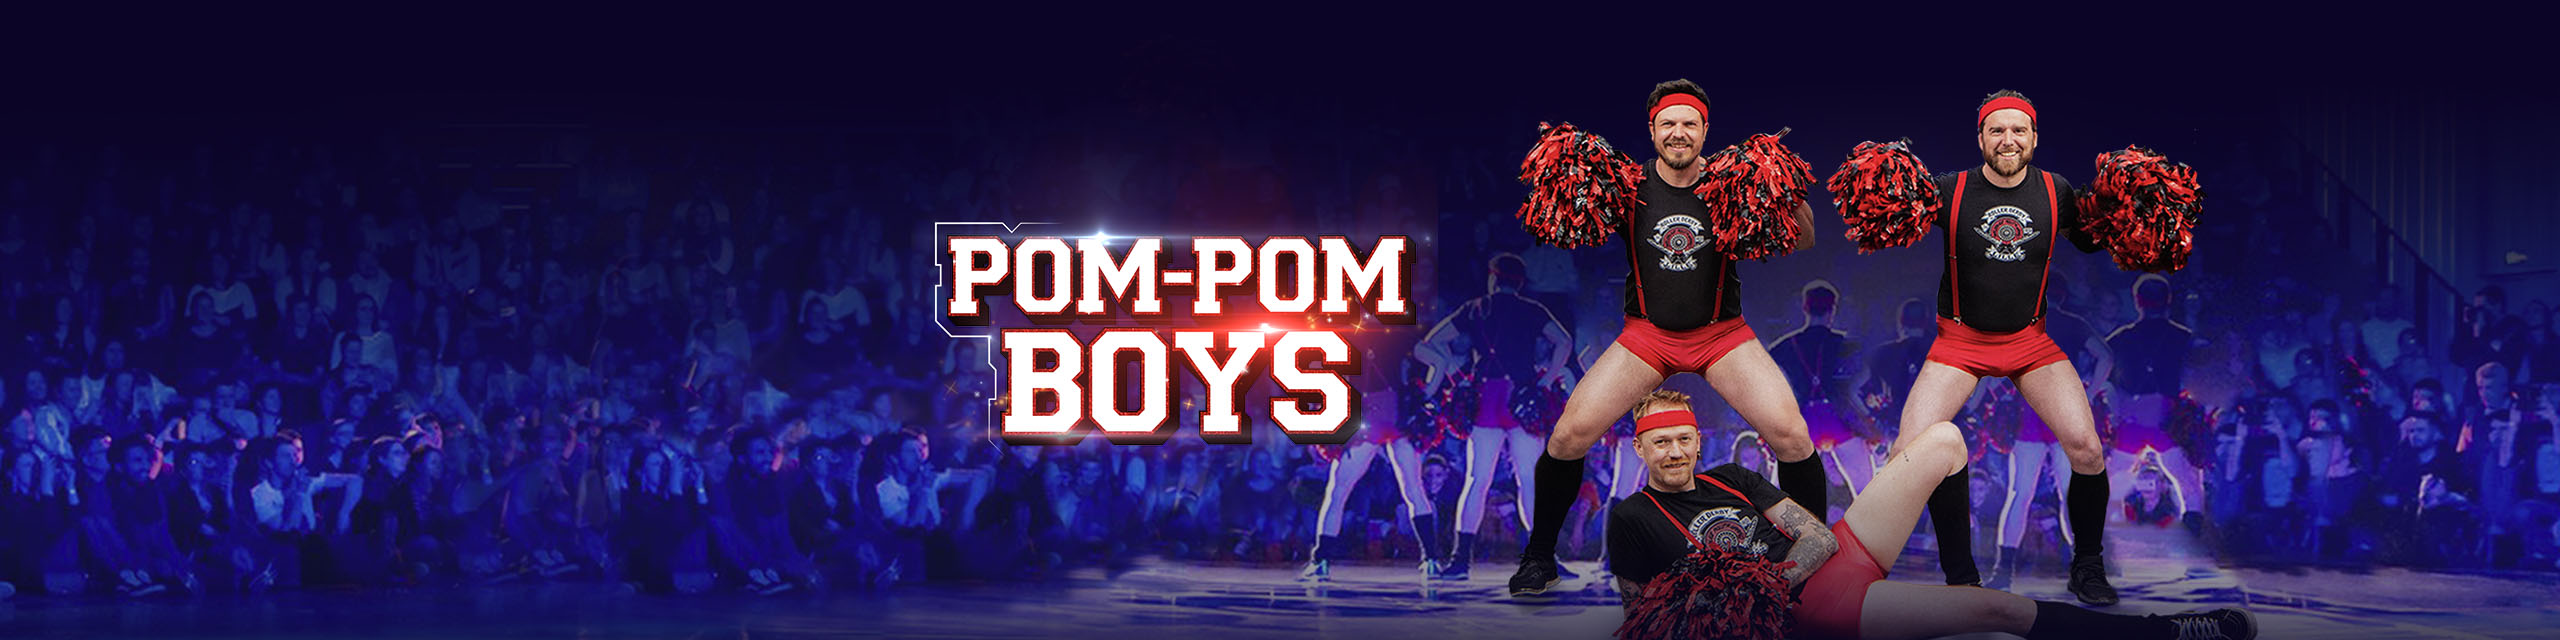 Pom_Pom_boys